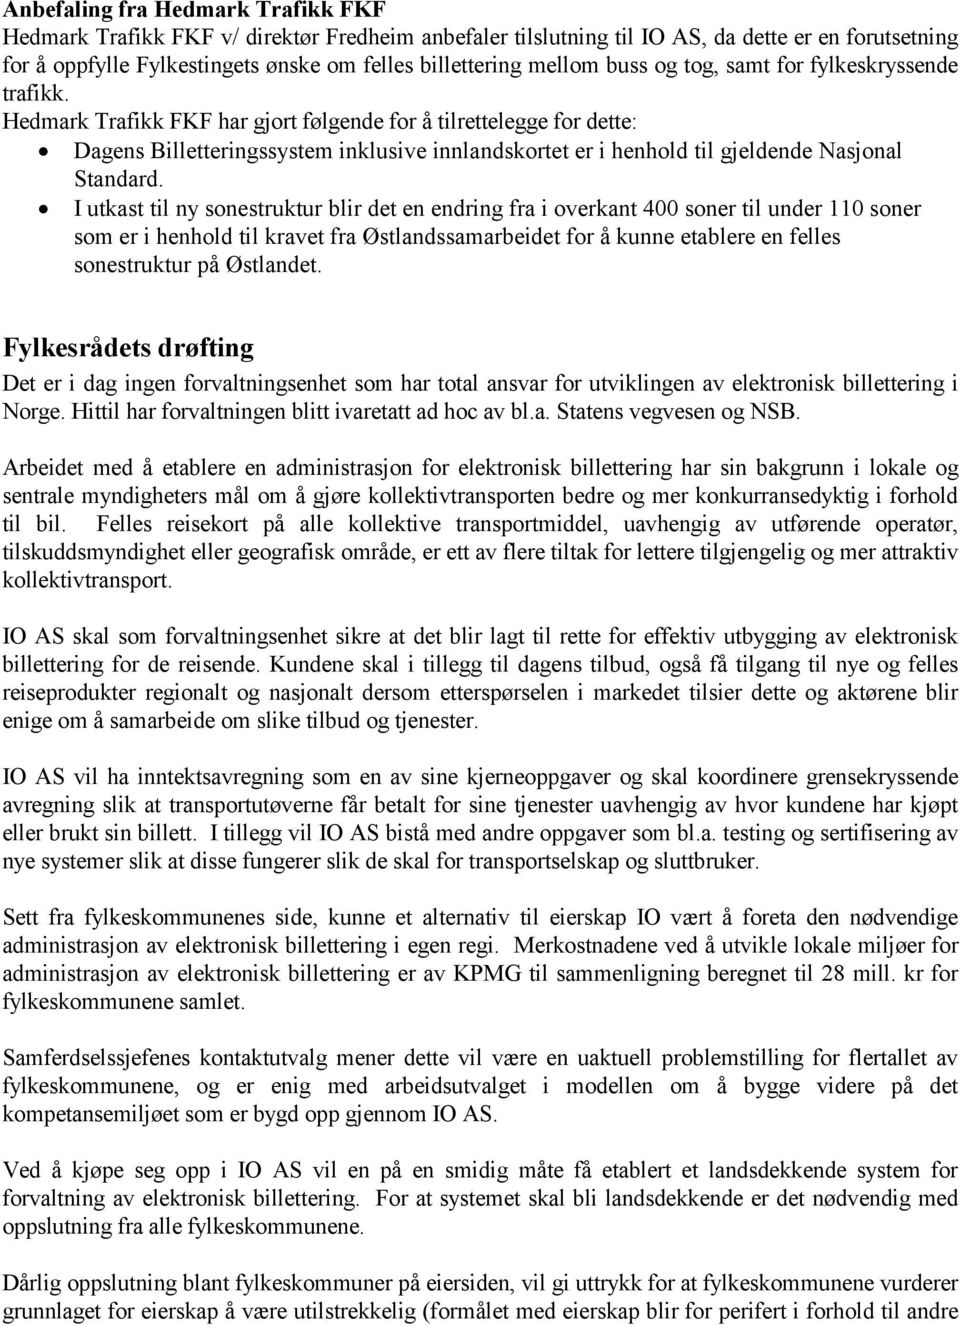 Hedmark Trafikk FKF har gjort følgende for å tilrettelegge for dette: Dagens Billetteringssystem inklusive innlandskortet er i henhold til gjeldende Nasjonal Standard.